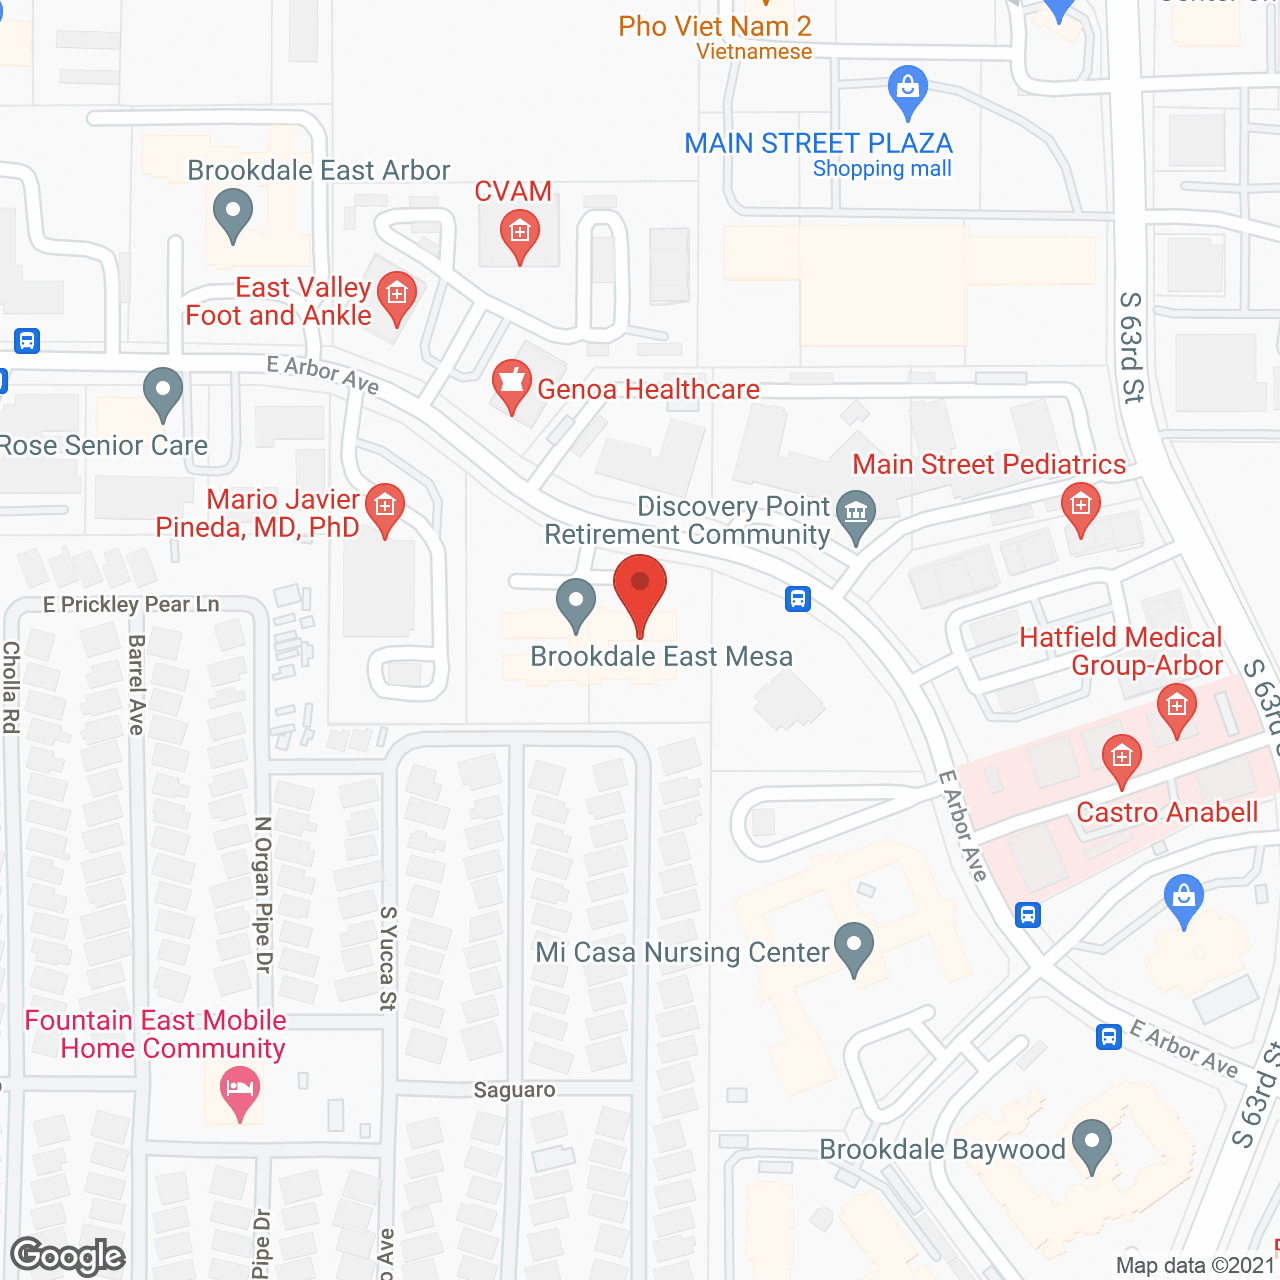 Brookdale East Mesa in google map